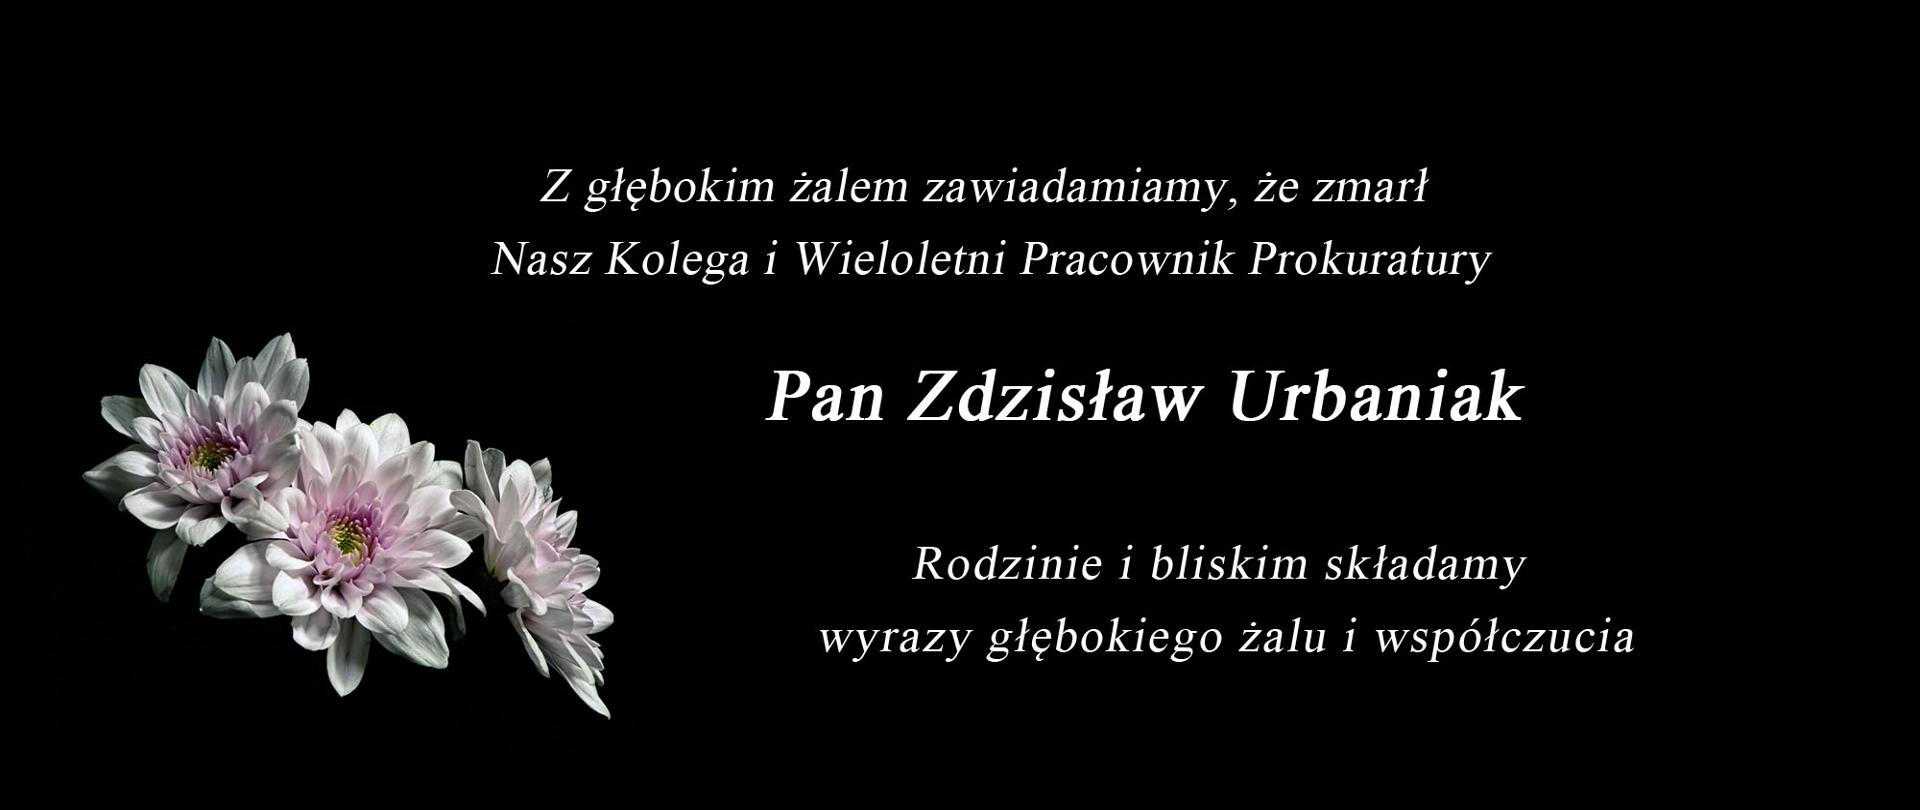 Pożegnanie naszego drogiego kolegi Zdzisława Urbaniaka